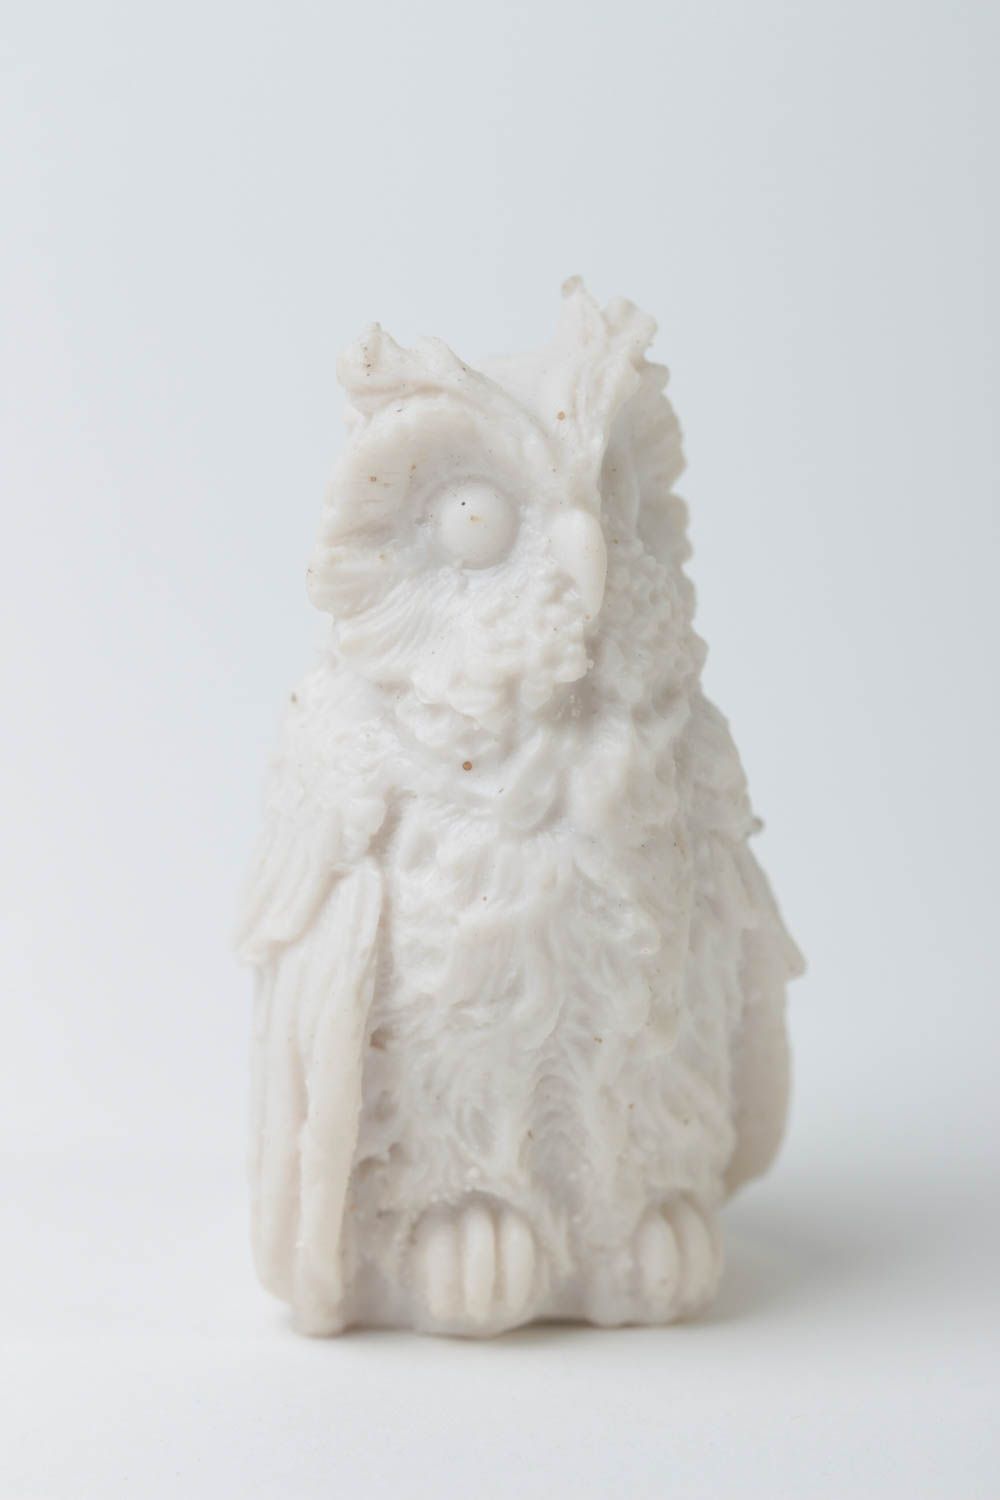 Handmade statuette designer statuette home decor unusual gift owl figurine photo 2